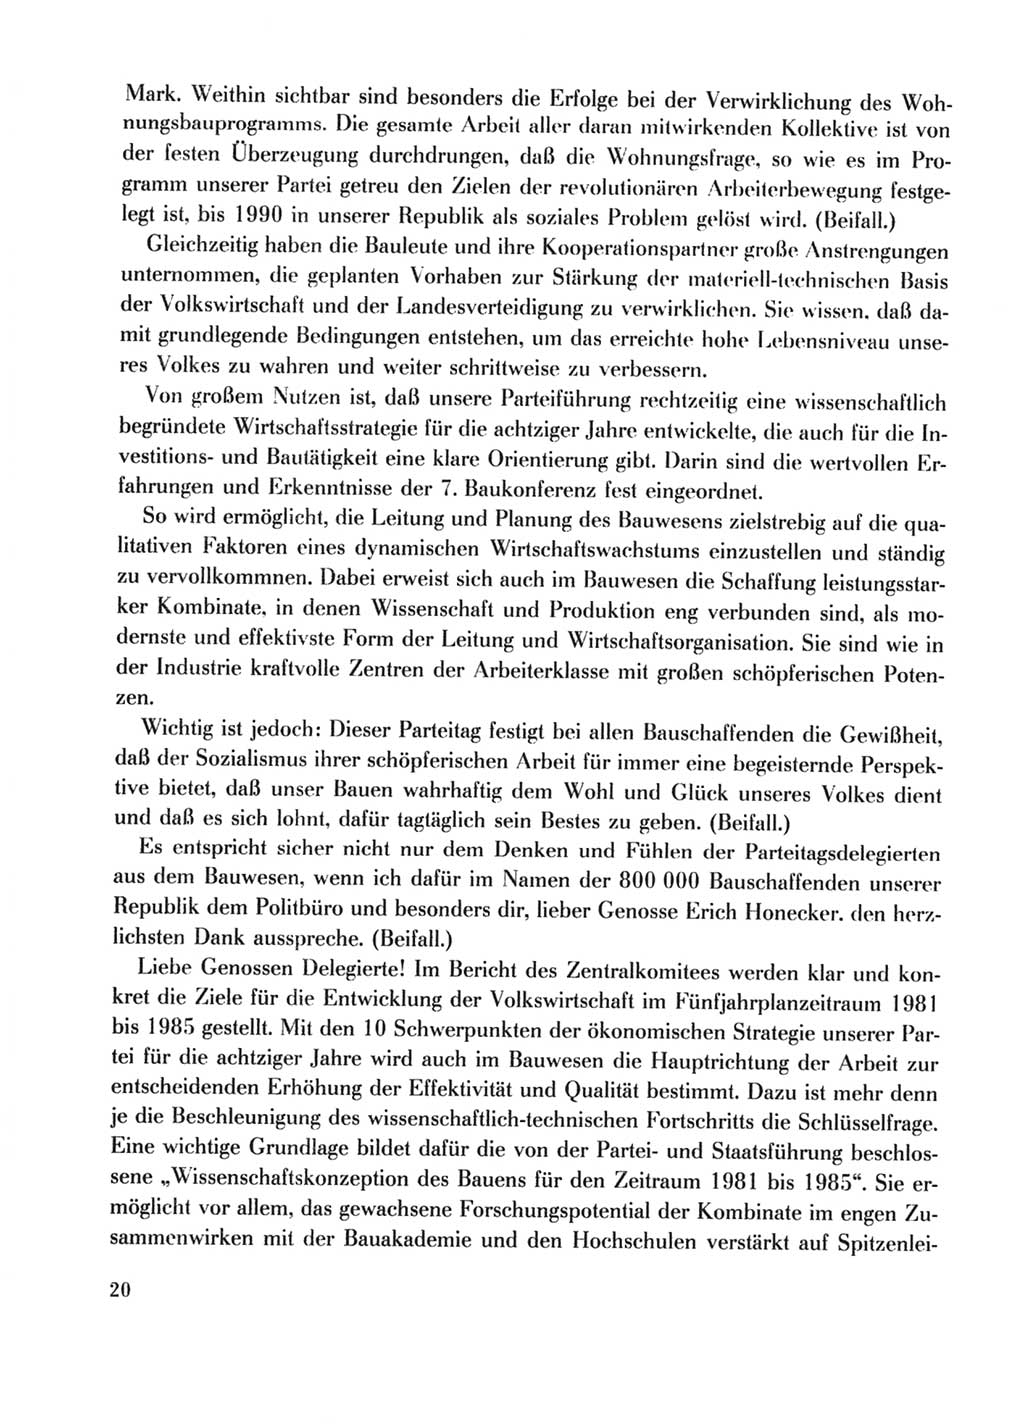 Protokoll der Verhandlungen des Ⅹ. Parteitages der Sozialistischen Einheitspartei Deutschlands (SED) [Deutsche Demokratische Republik (DDR)] 1981, Band 2, Seite 20 (Prot. Verh. Ⅹ. PT SED DDR 1981, Bd. 2, S. 20)